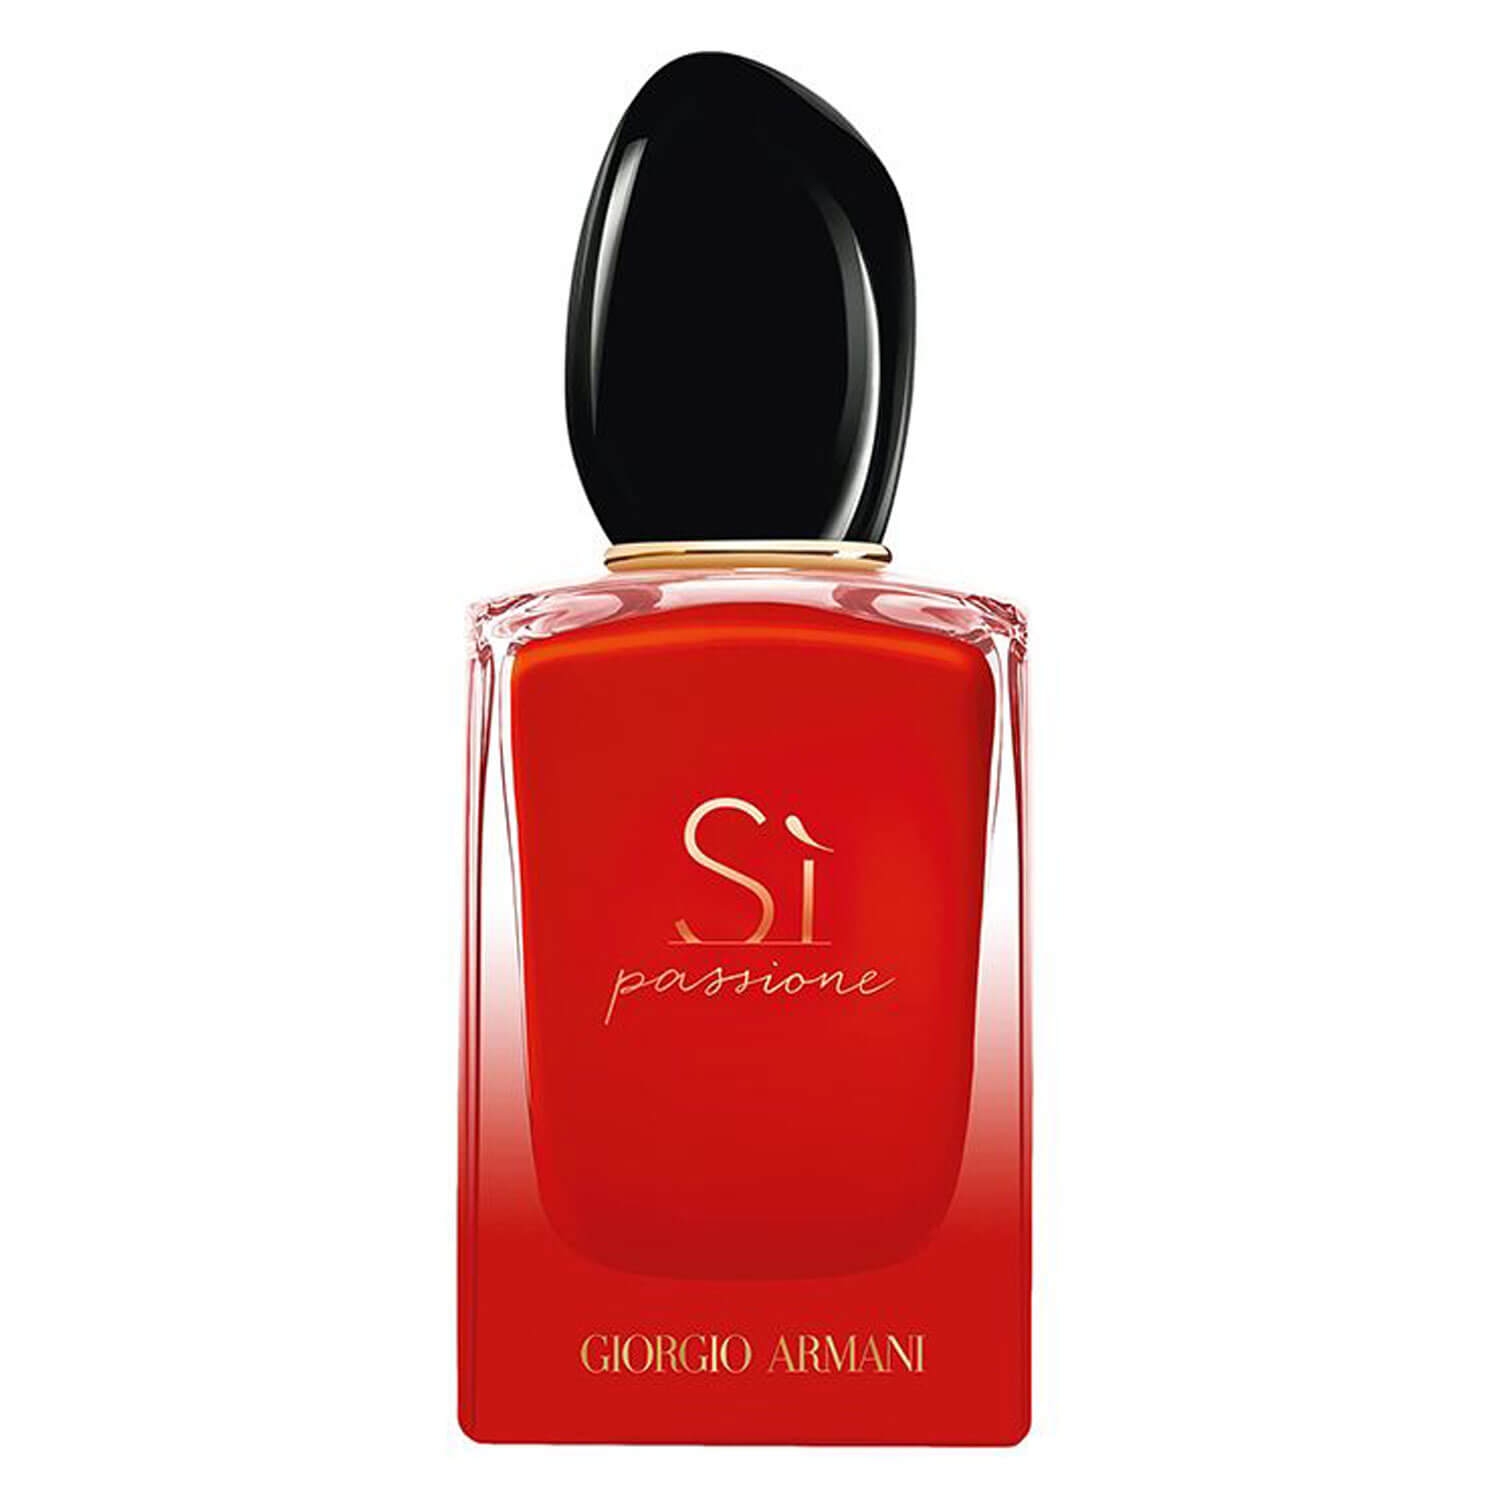 Produktbild von Sì - Passione Intense Eau de Parfum